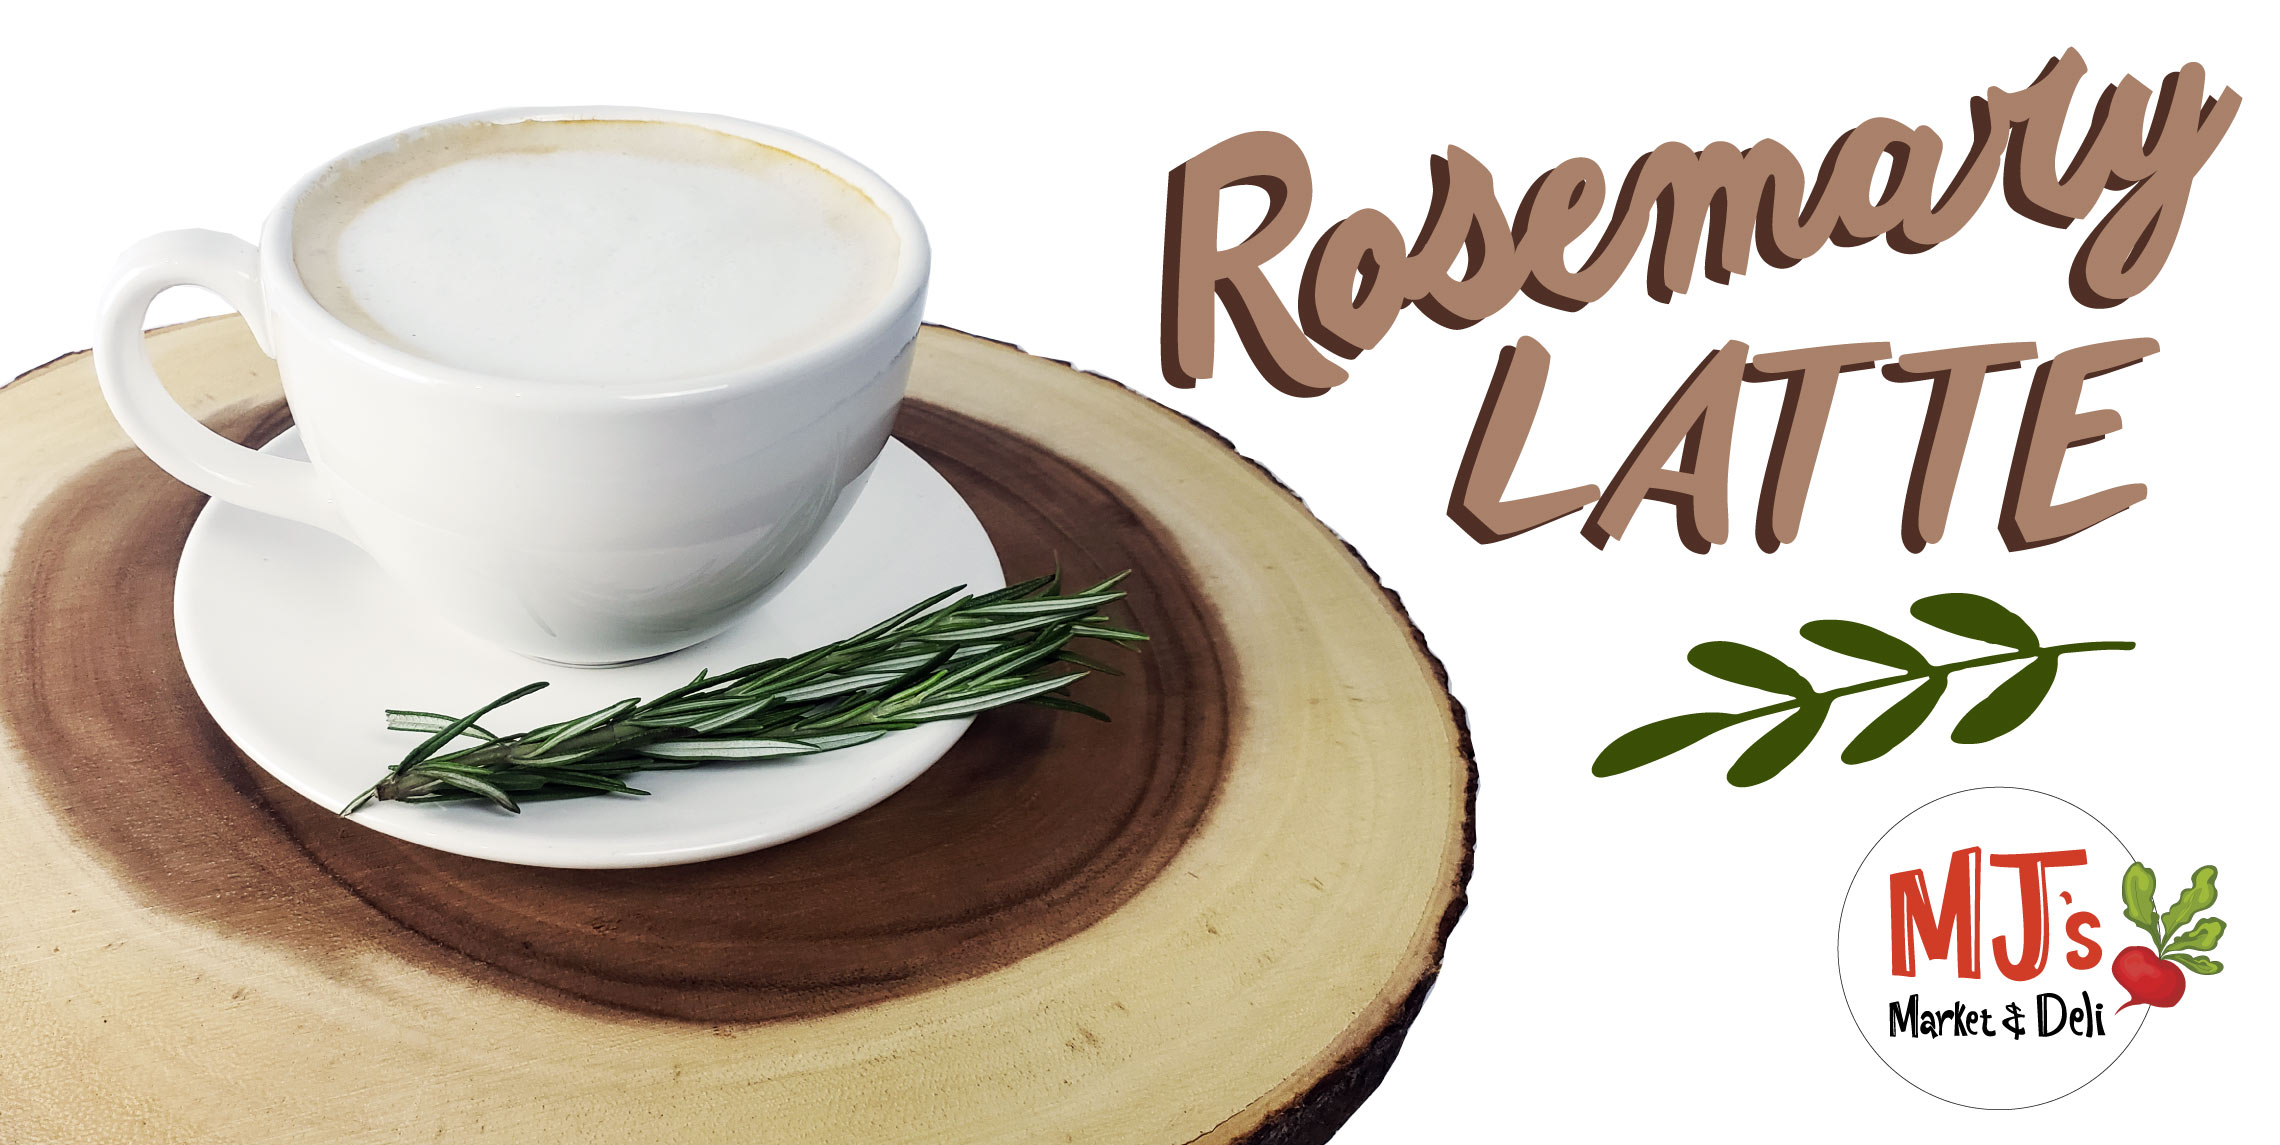 Rosemary Latte